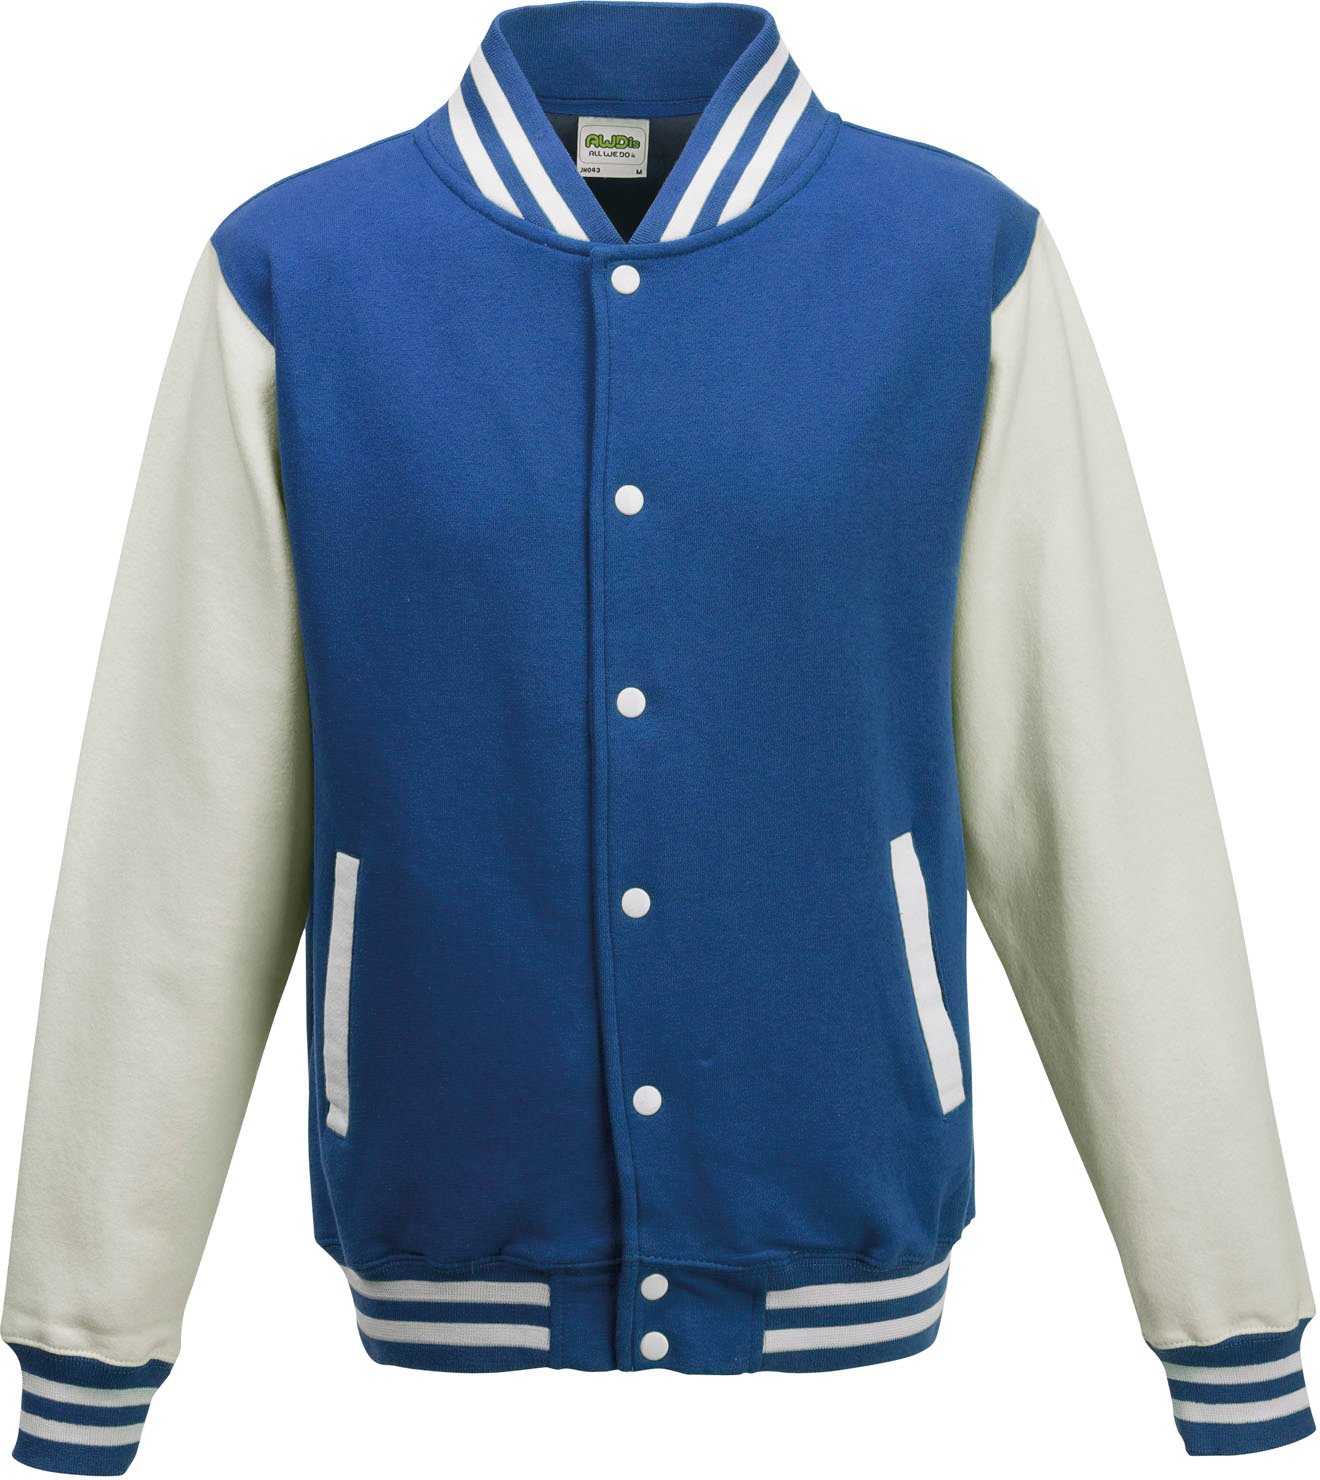 Just Hoods by AWDis Herren Jacke Varsity Jacket, Multicoloured (Royal Blue/White), XXL